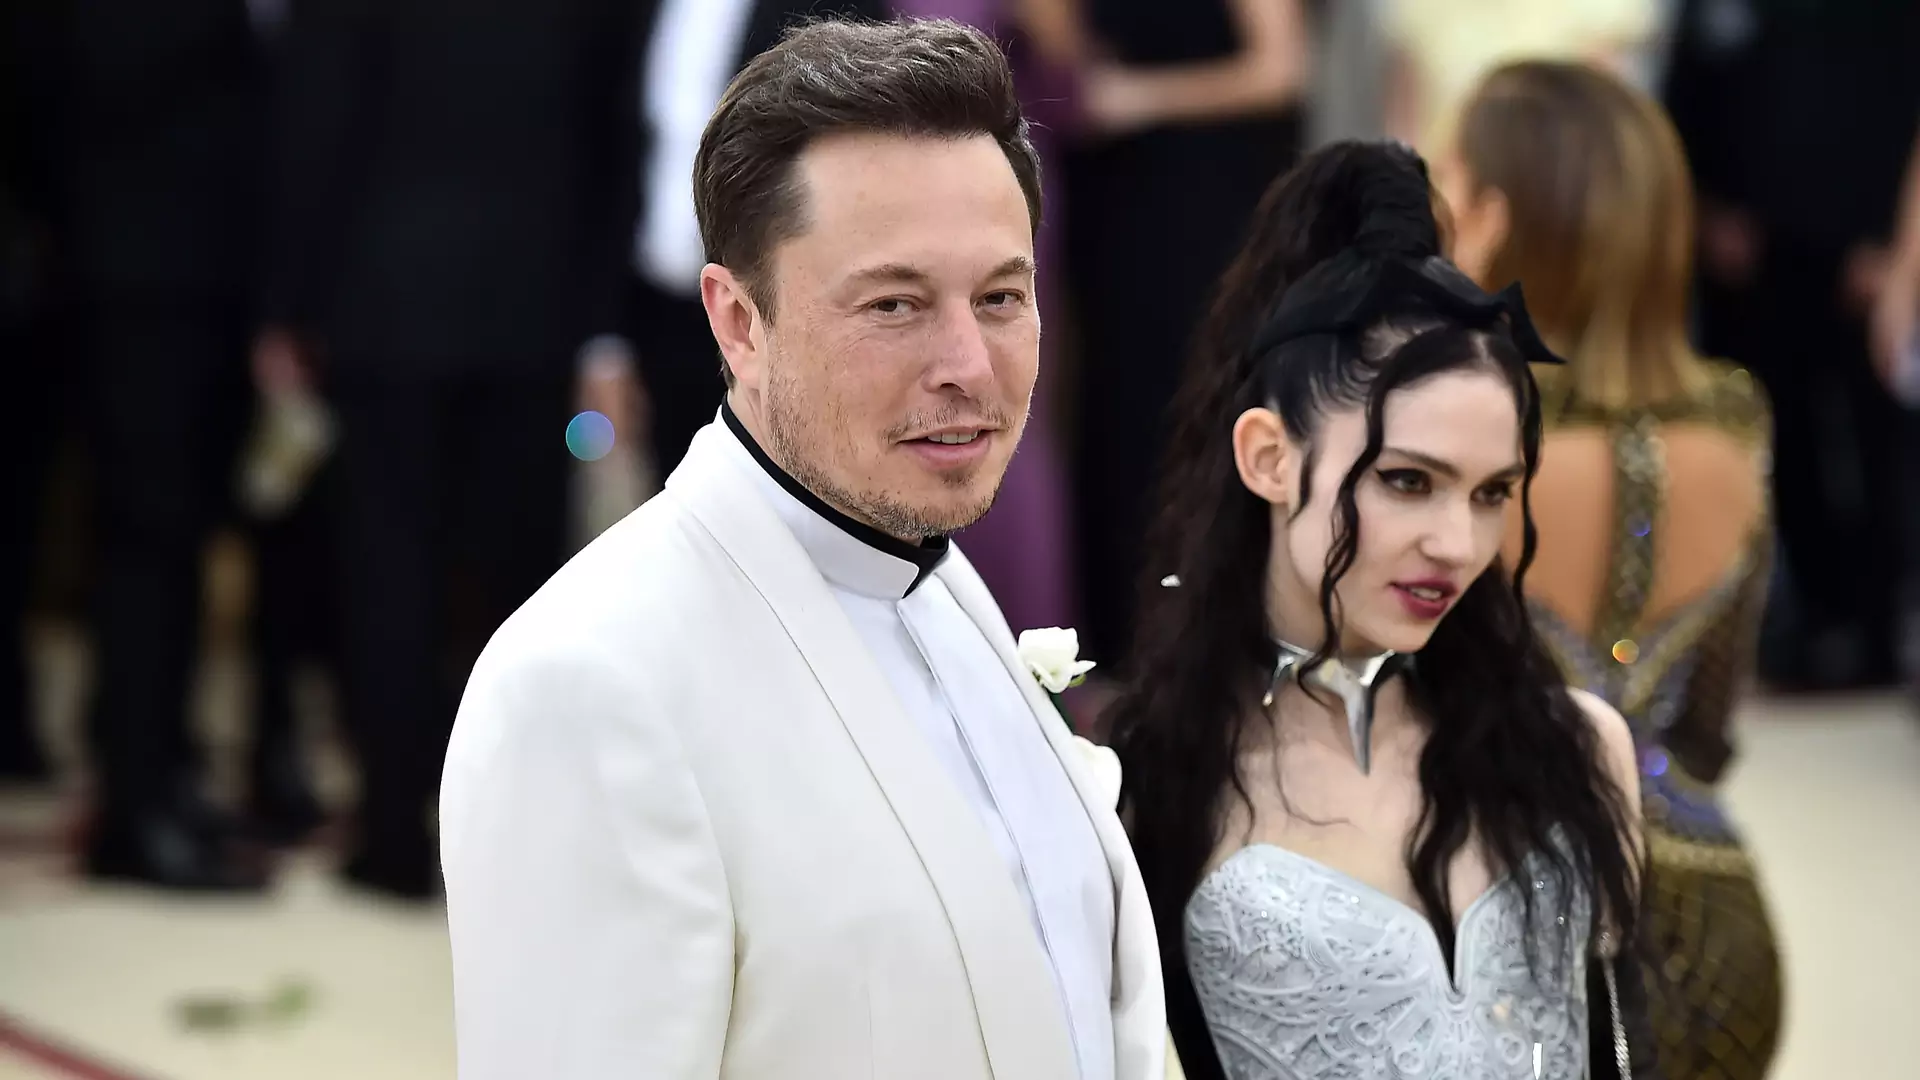 Grimes i Elon Musk zostali rodzicami. Imię dziecka to kwintesencja ekscentryzmu sławnej pary